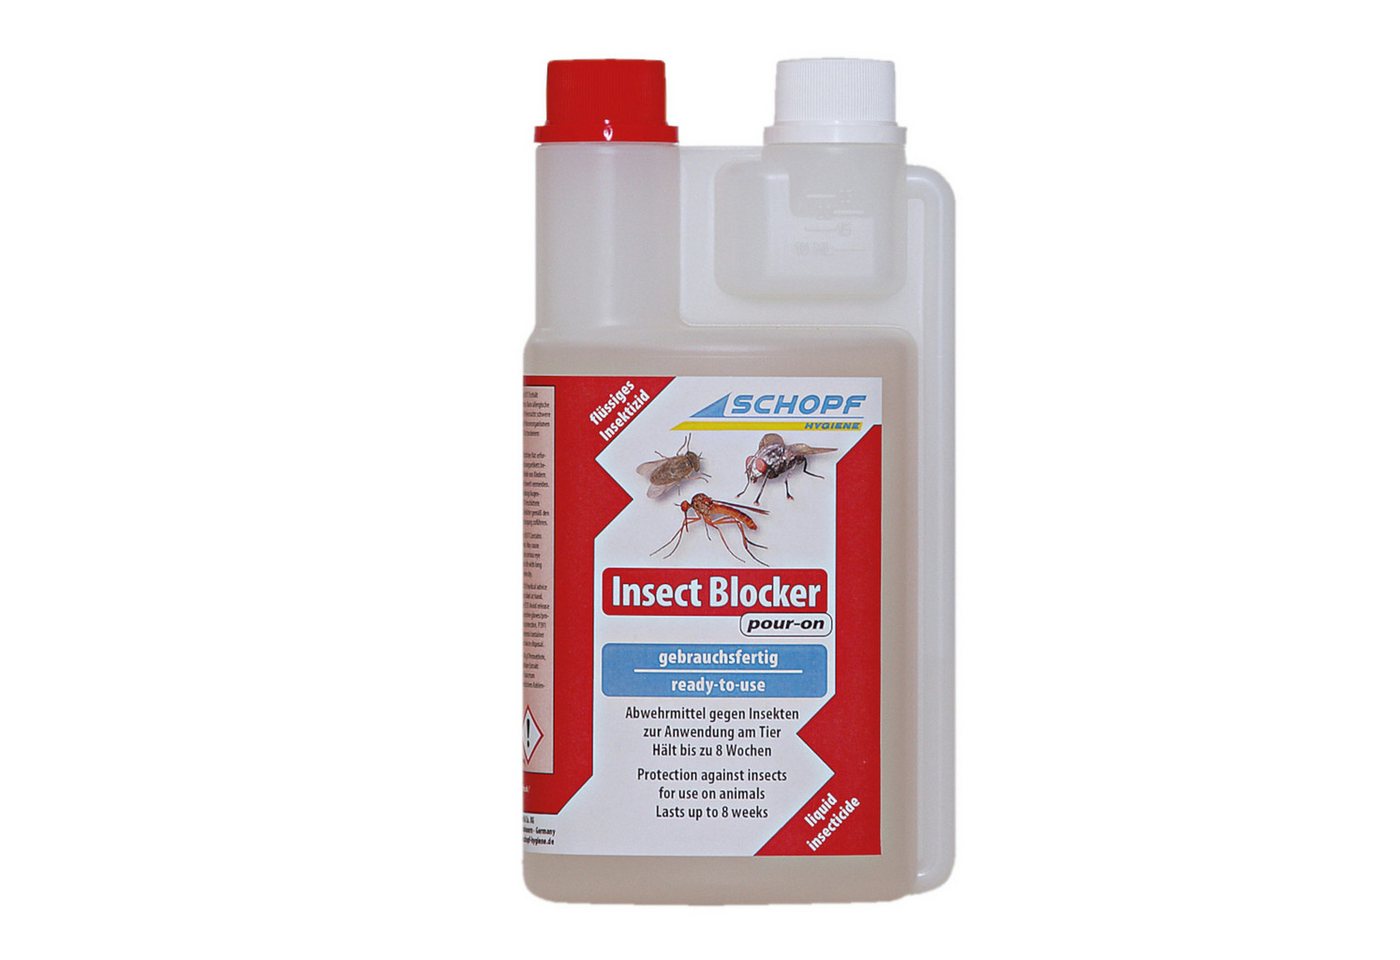 Schopf Insektenspray Insect Blocker pour-on - Abwehrmittel gegen Insekten, 500 ml von Schopf